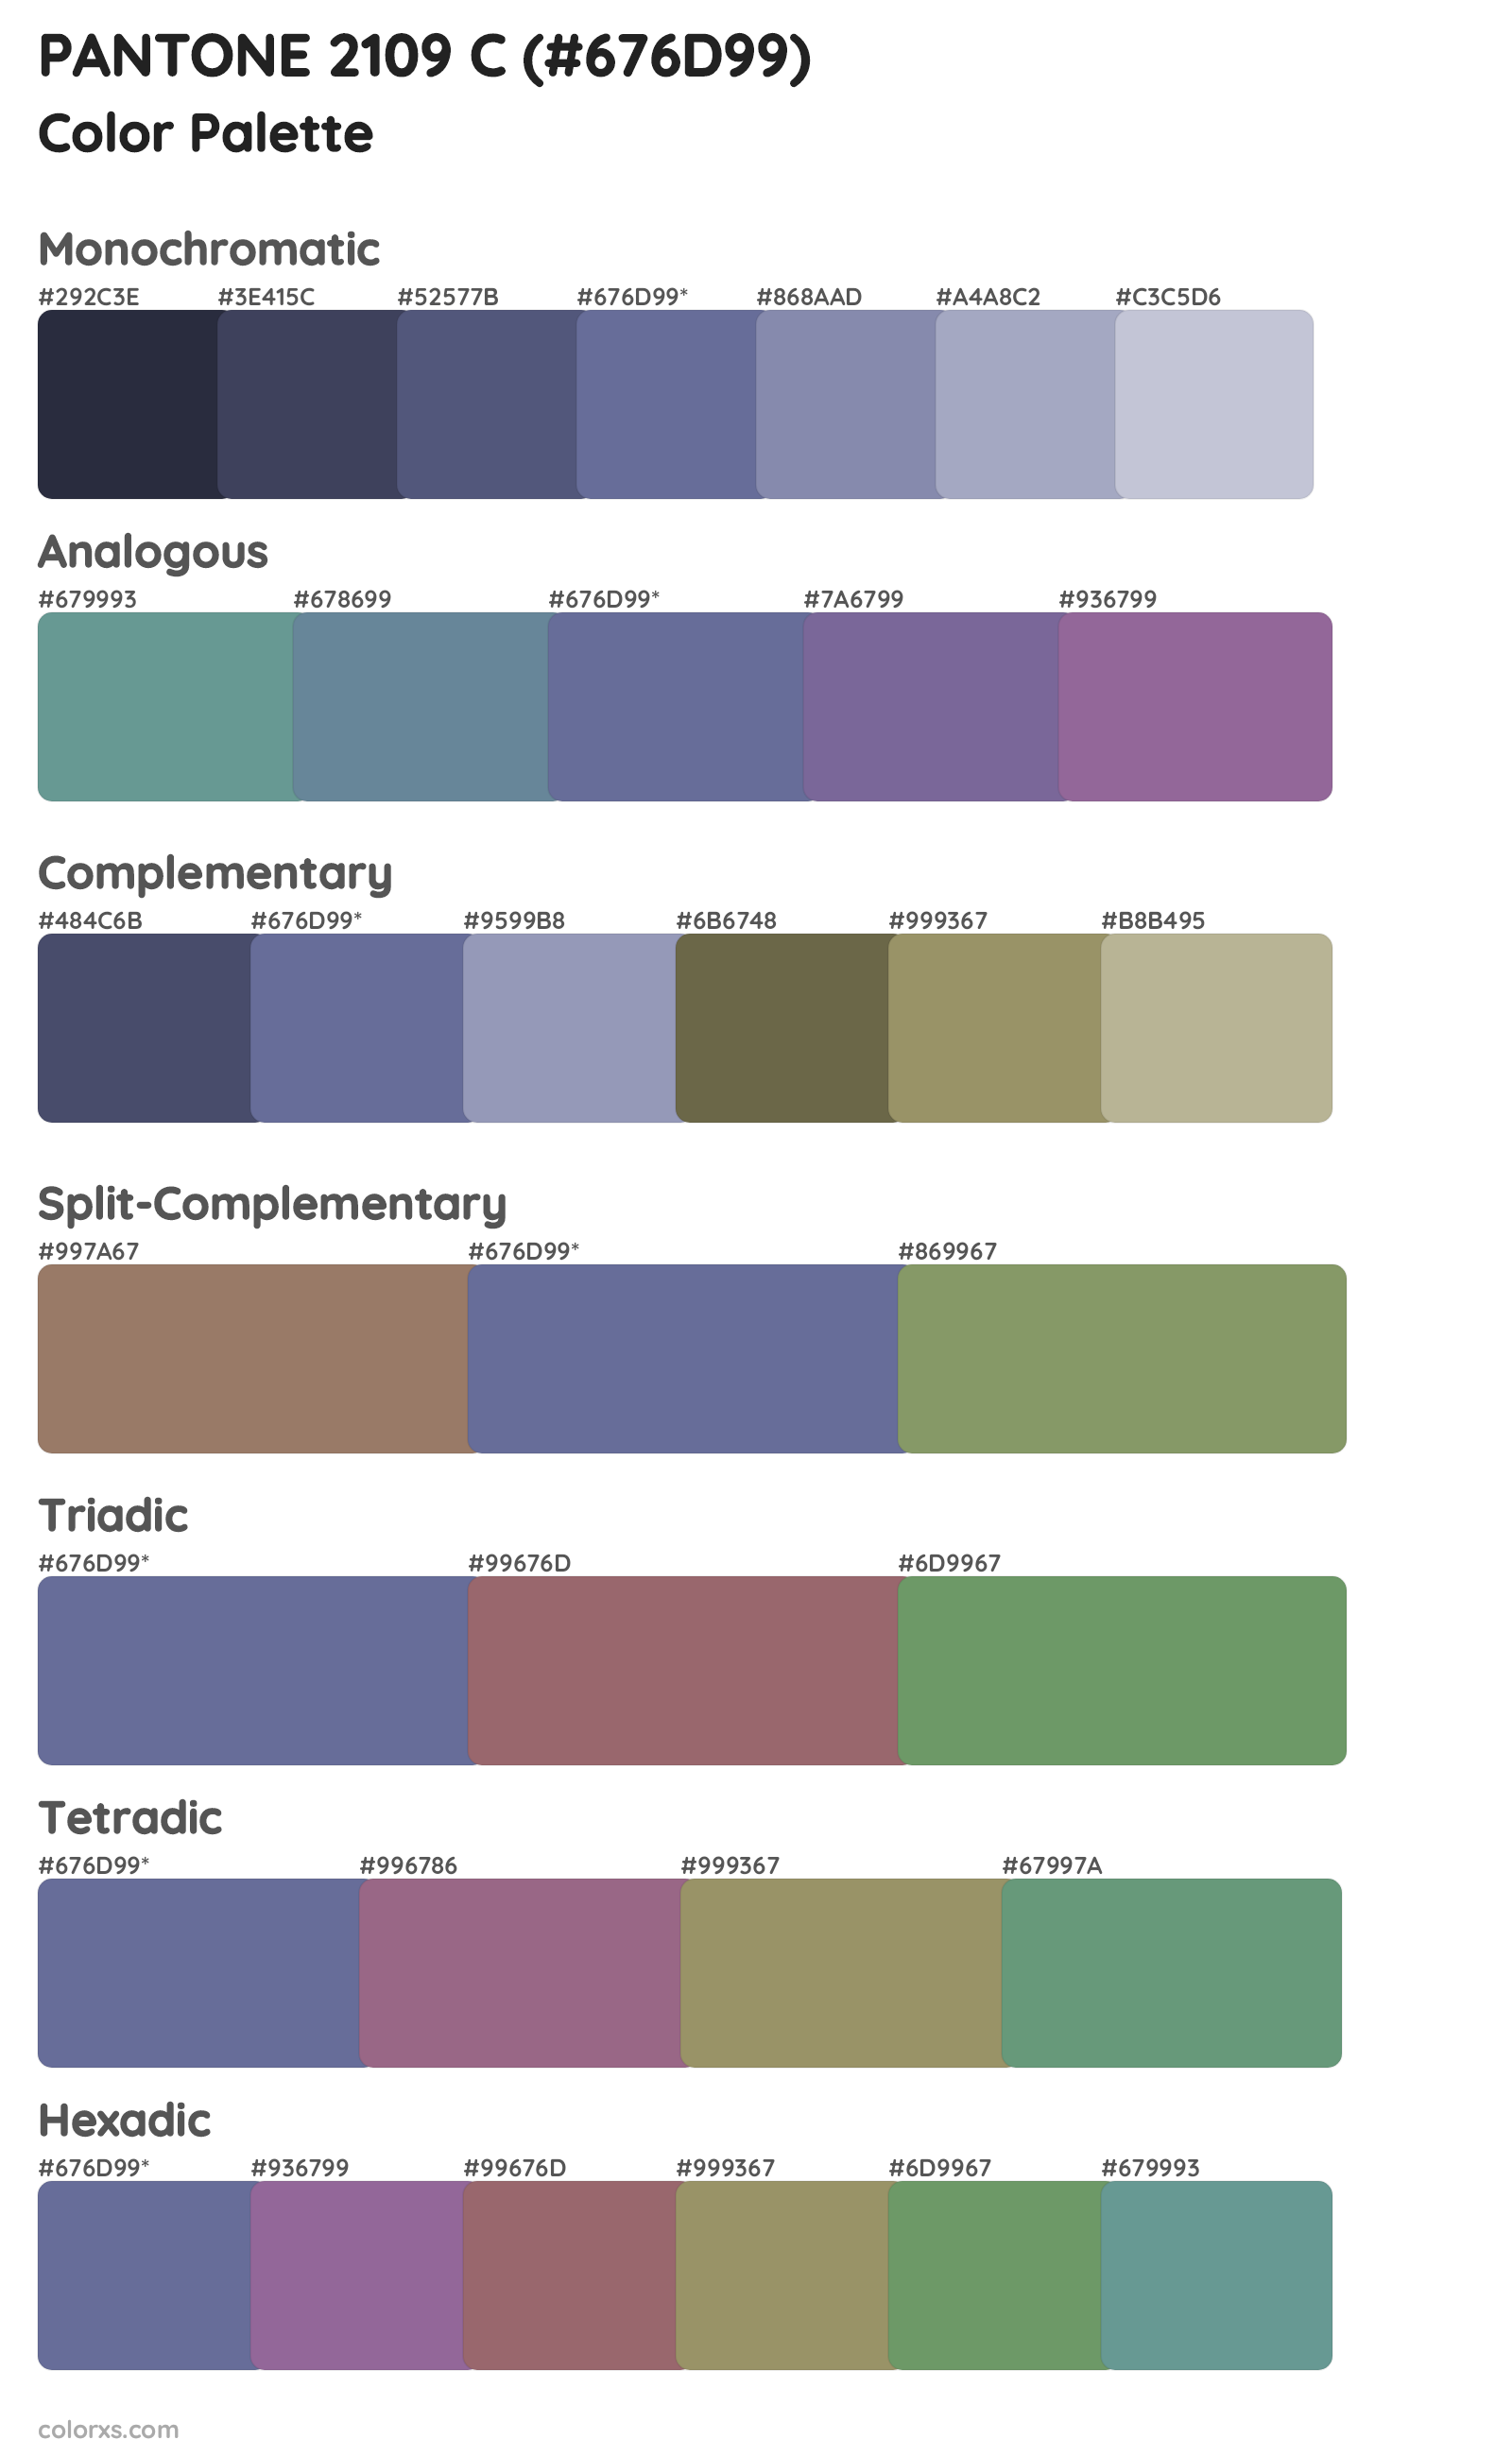 PANTONE 2109 C Color Scheme Palettes